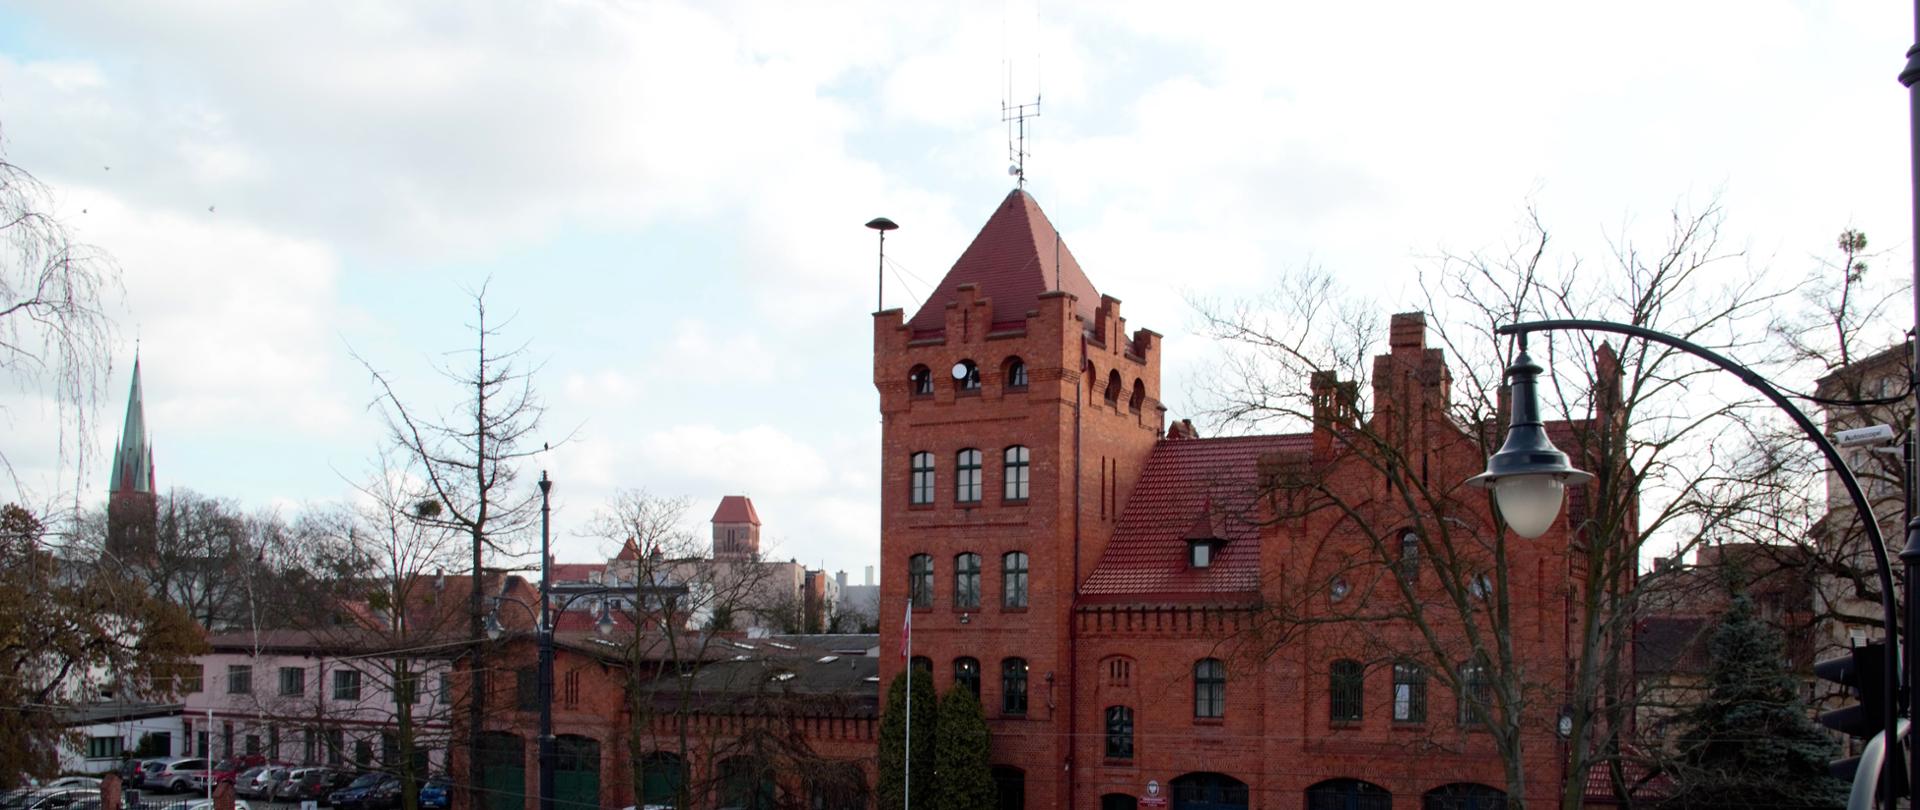 Obiekt, będący siedzibą Komendy Wojewódzkiej Państwowej Straży Pożarnej w Toruniu. Widok frontu, od strony Wałów Sikorskiego.